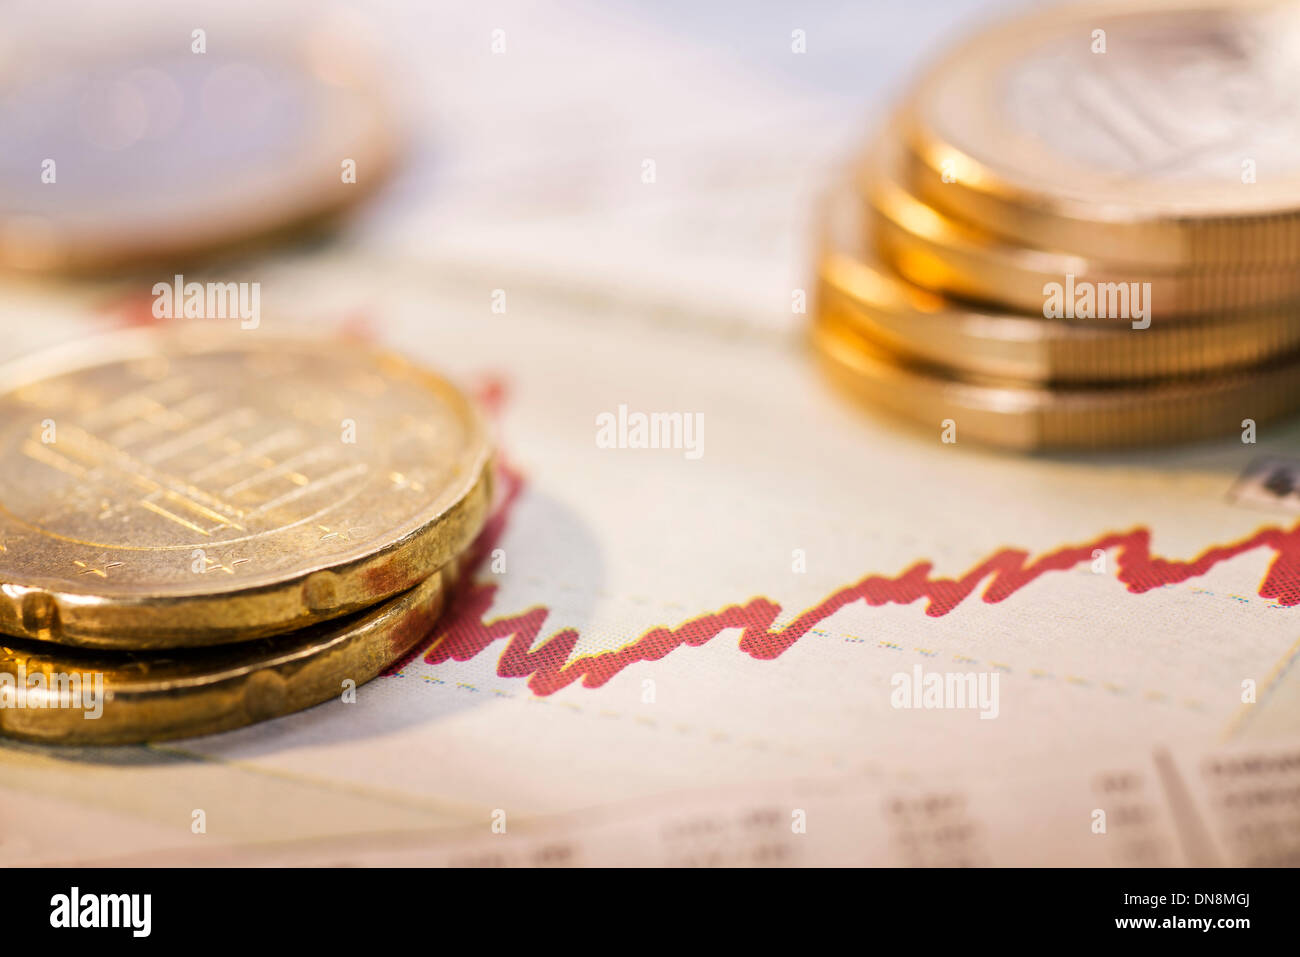 Monete metalliche in euro e un grafico con la curva rossa come un simbolo della fluttuazione dei tassi di cambio. Foto Stock